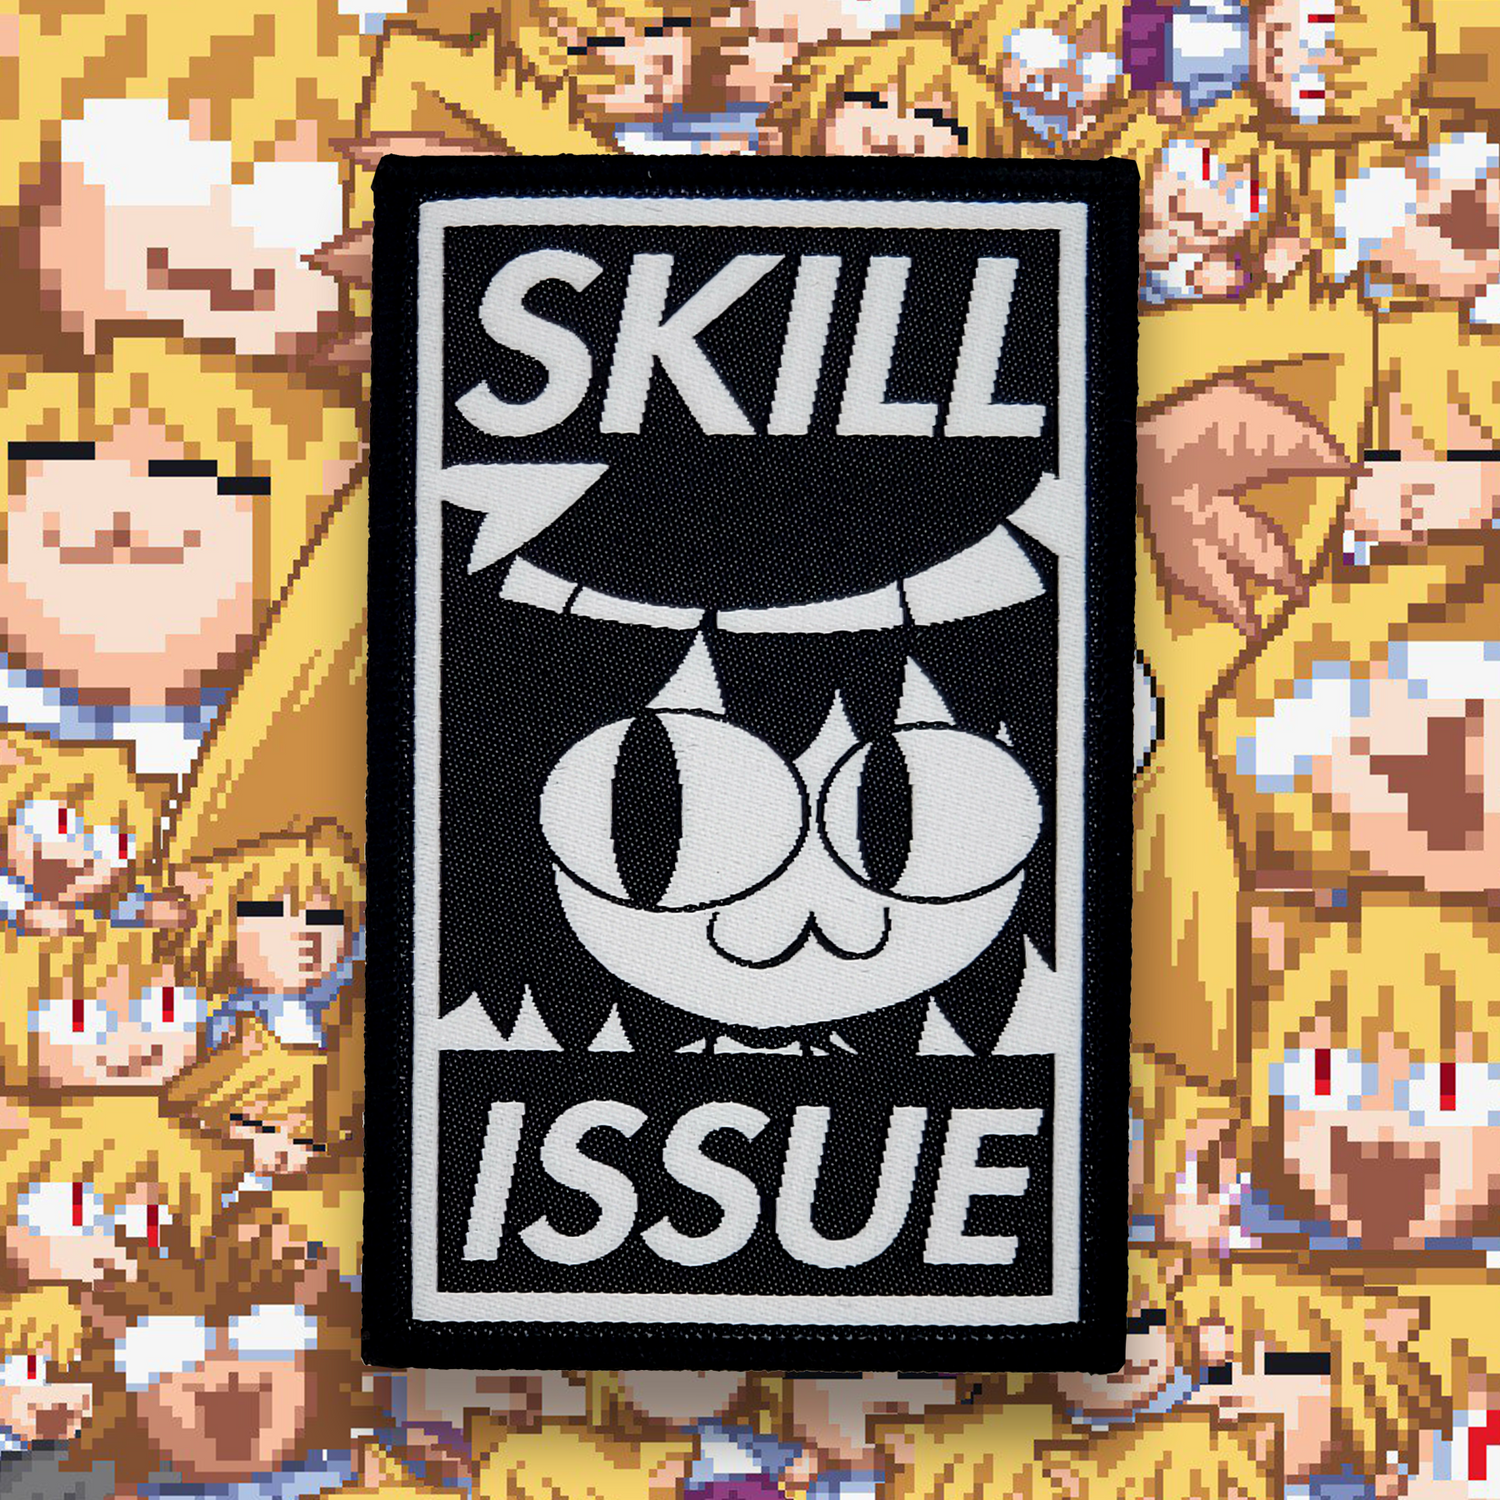 Skill Issue